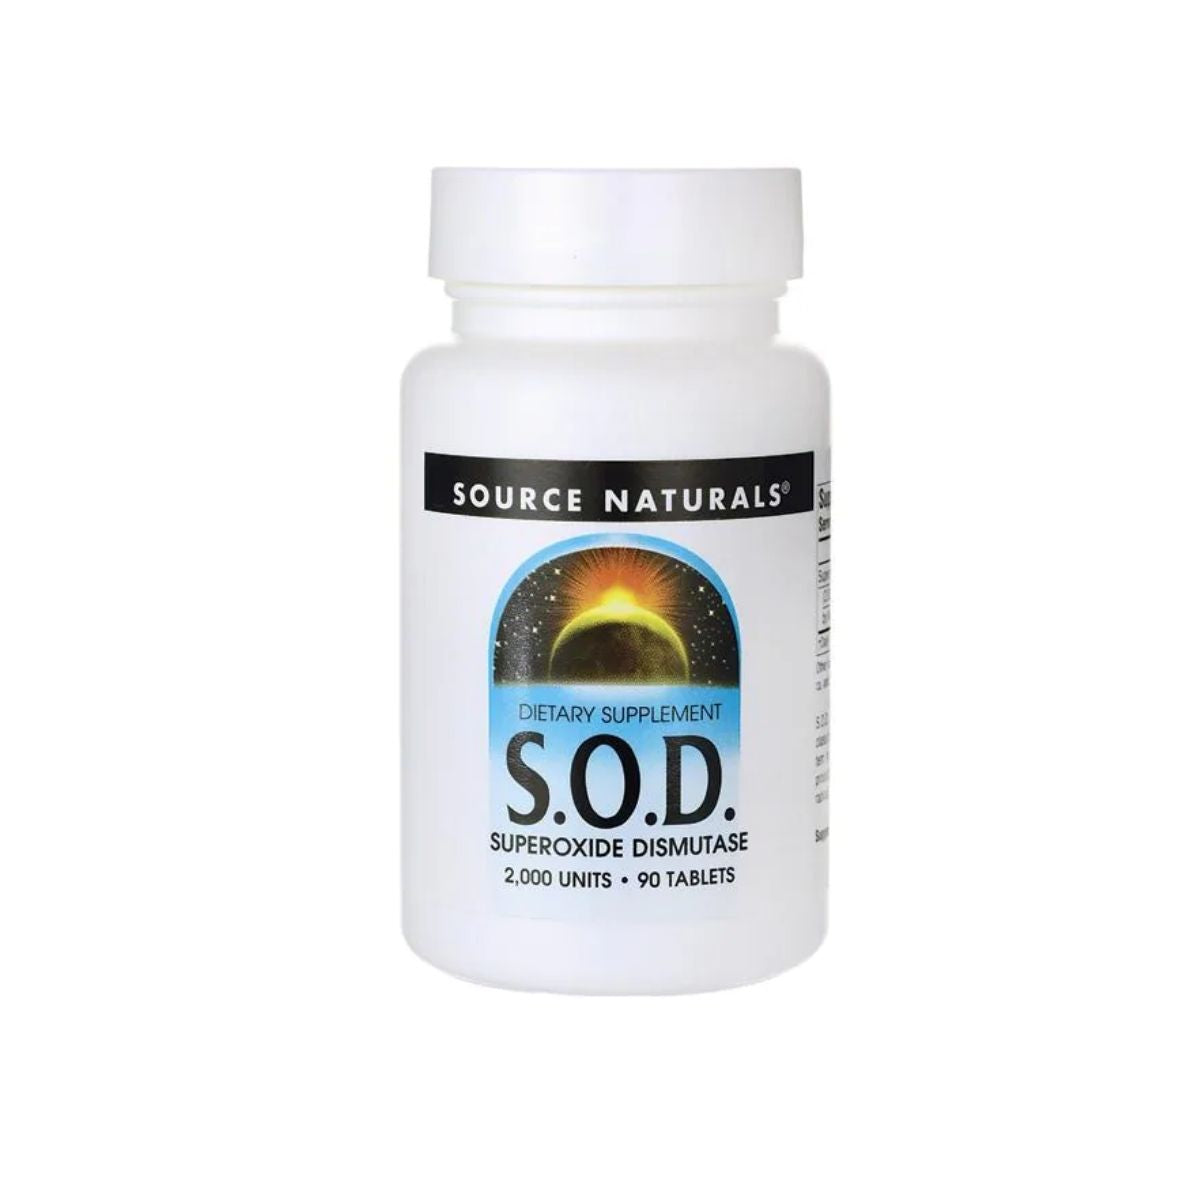 S.O.D. Superoxide Dismutase 2,000 Units